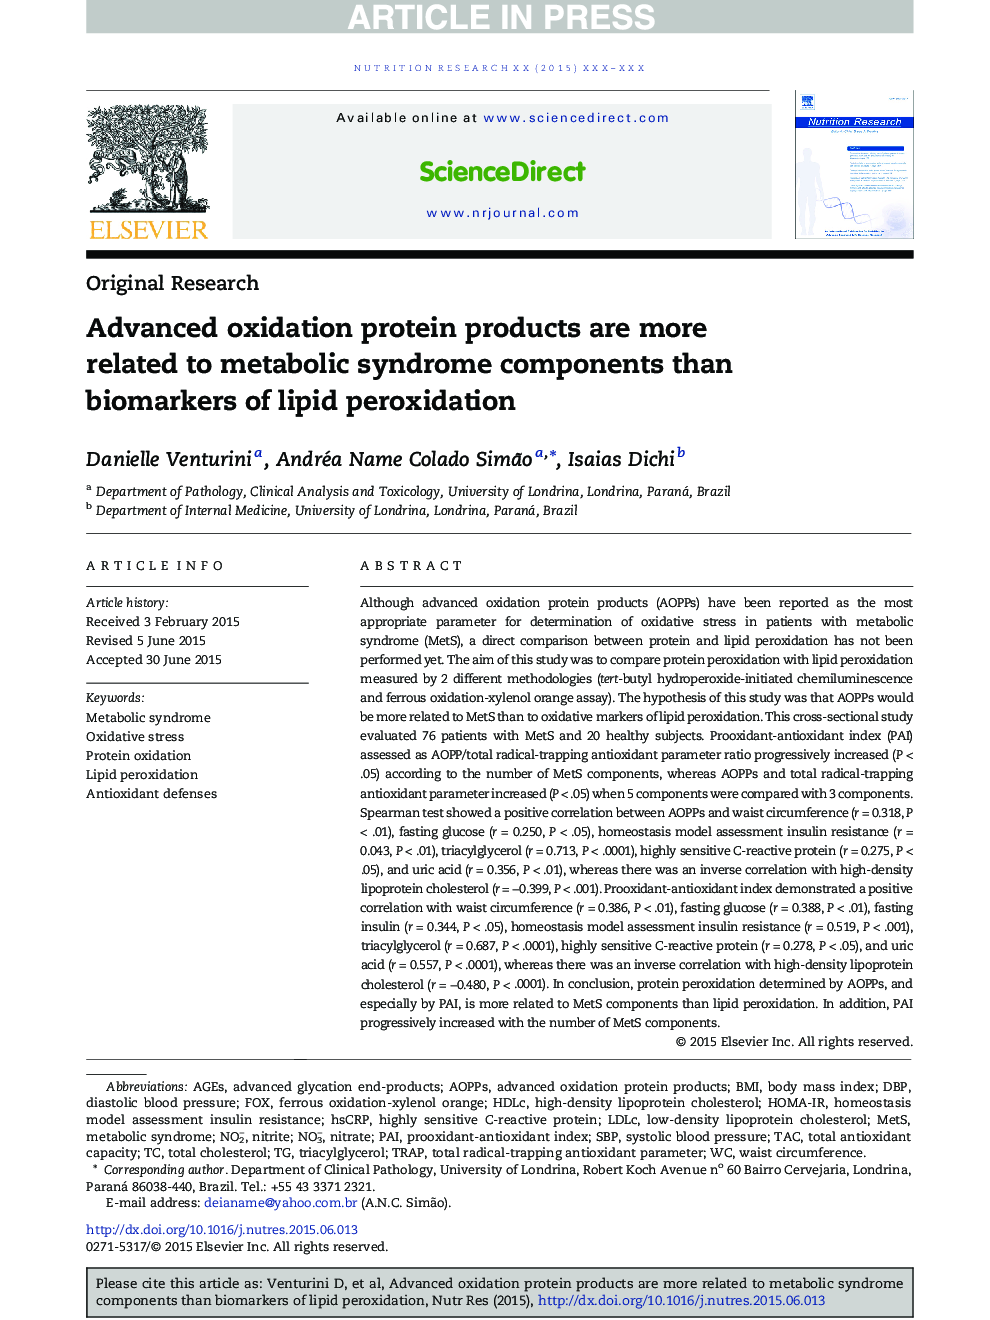 محصولات پروتئین پیشرفته اکسیداسیون بیشتر به اجزای سندرم متابولیک نسبت به بیومارکرهای پراکسیداسیون لیپید مرتبط هستند 